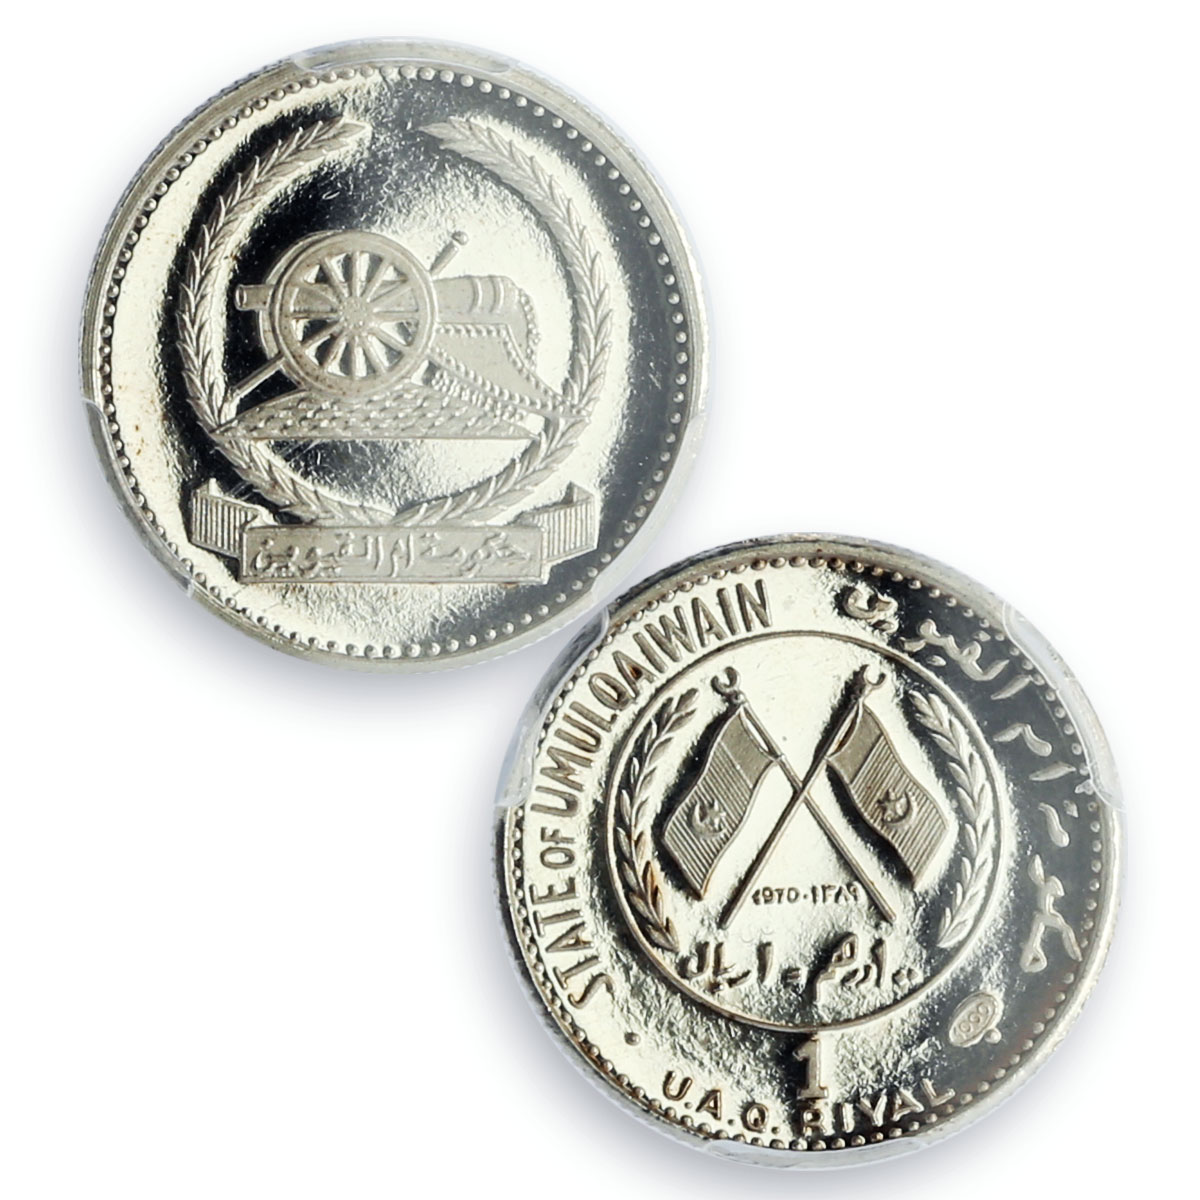 Umm Al Qaiwain Emirate 1 riyal Old Cannon KM-1 PR67 PCGS silver coin 1970